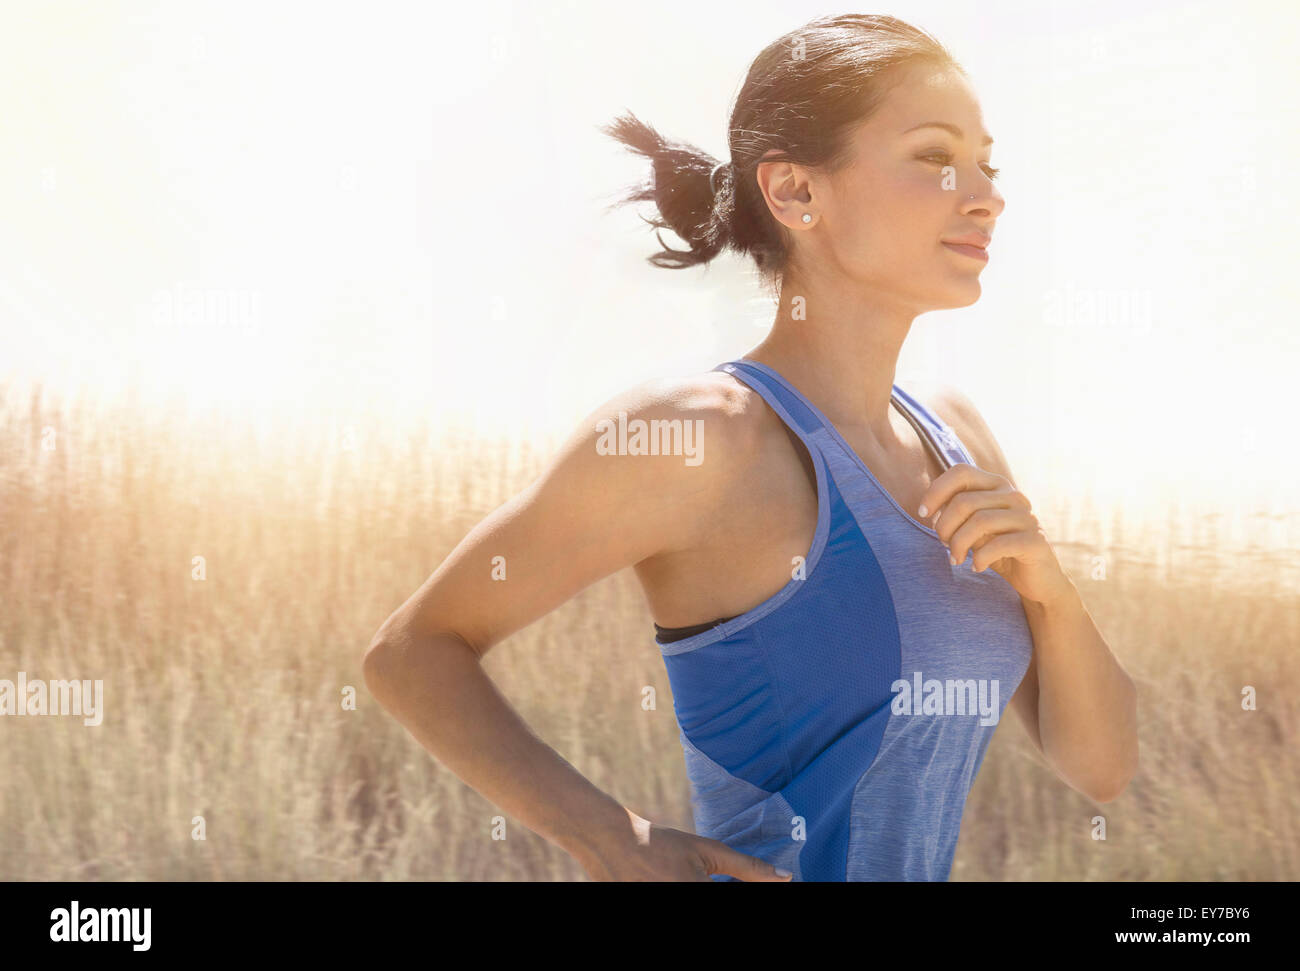 Junge Frau im freien laufen Stockfoto